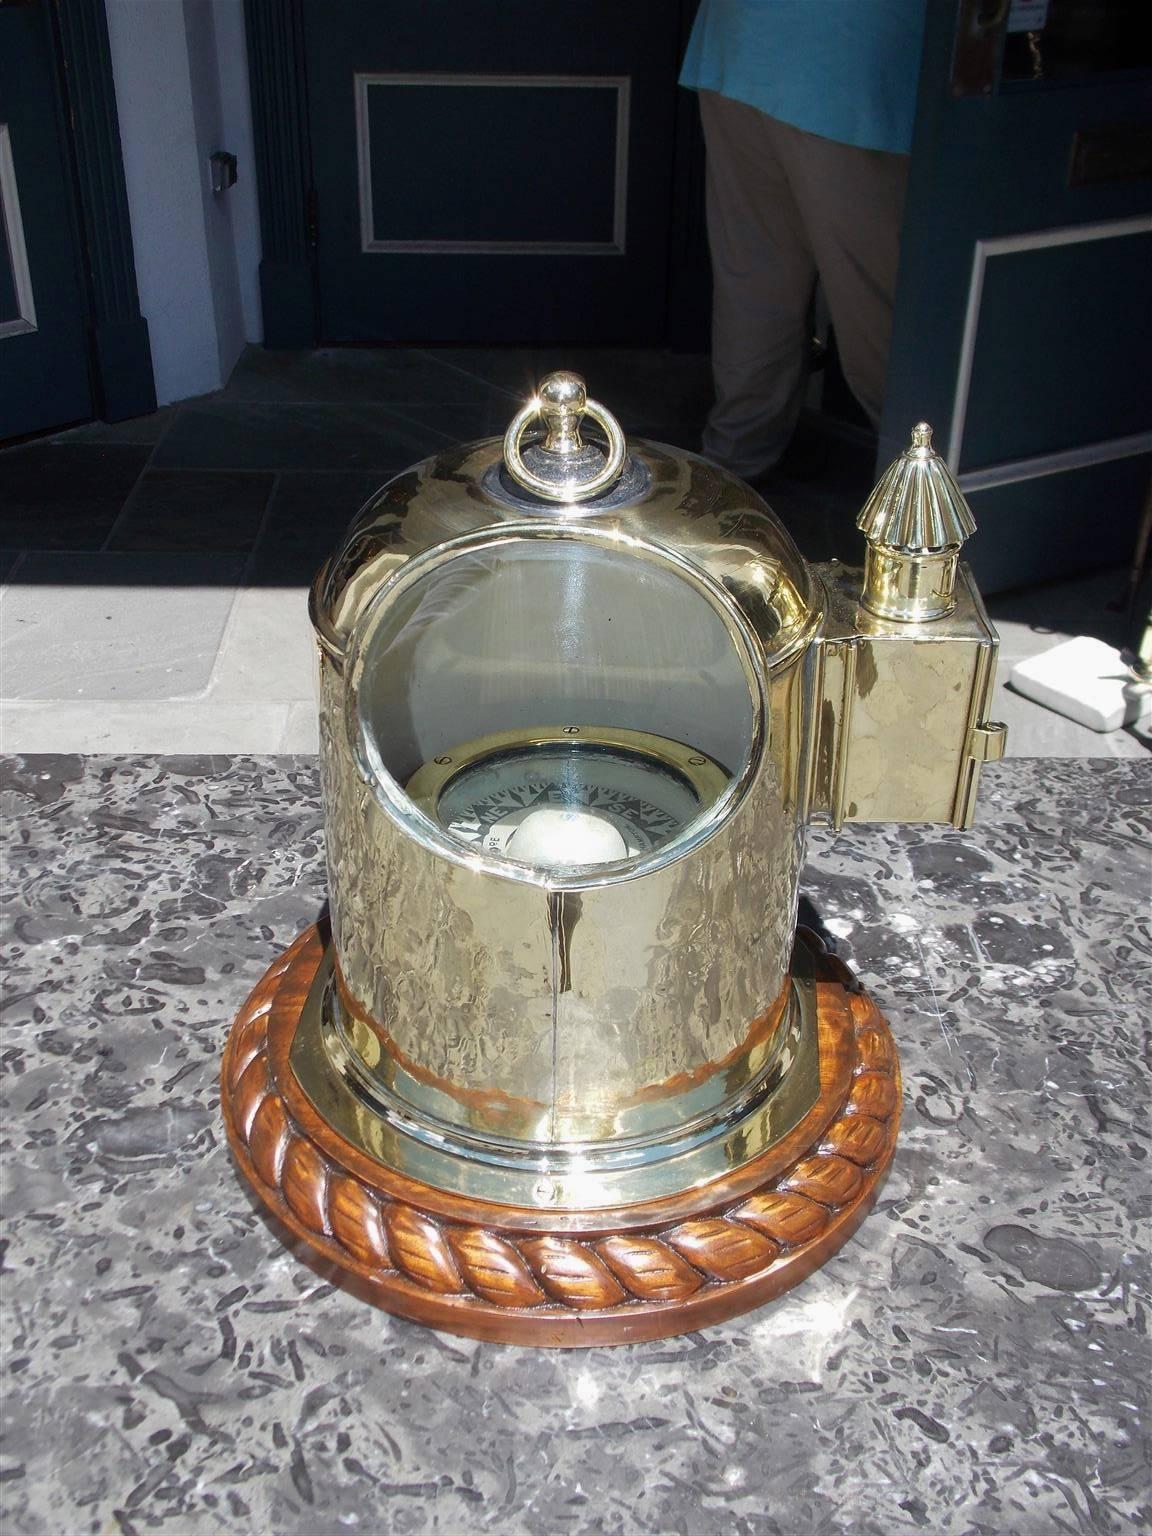 Englisches Yacht-Binnacle auf einem Sockel mit Mahagoni-Seilmotiv, ovale Glas-Sichtluke, mit der originalen abnehmbaren, belüfteten Seitenlampe aus Messing und Tragegriff. Das Binnacle ist mit einem in Alkohol getauchten Innenkompass mit der